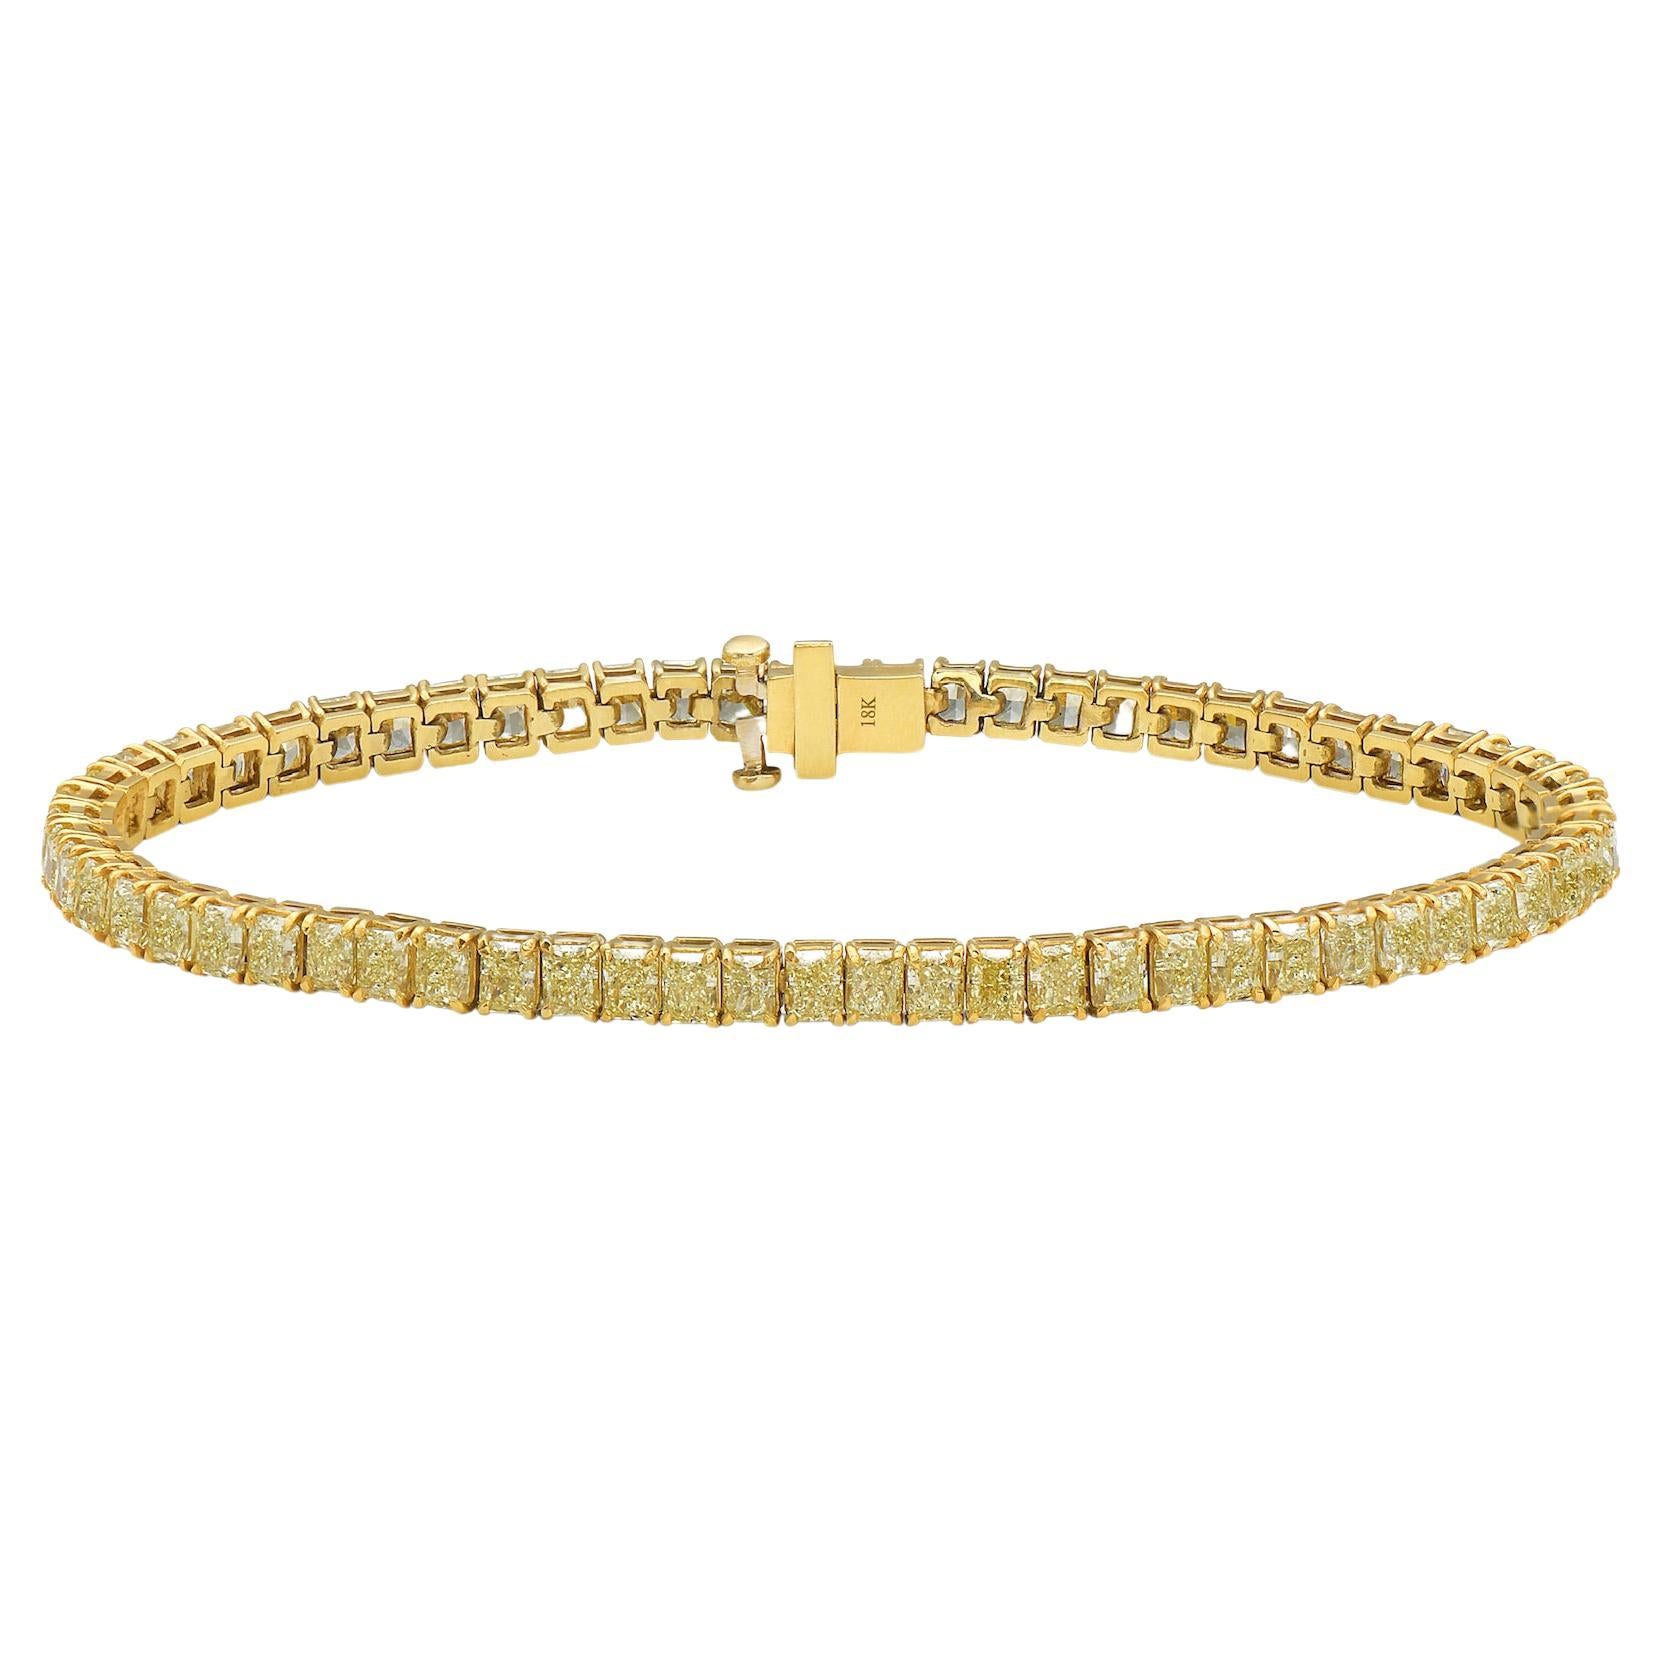 Bracelet tennis de diamants taille coussin jaune intense fantaisie de 7 carats